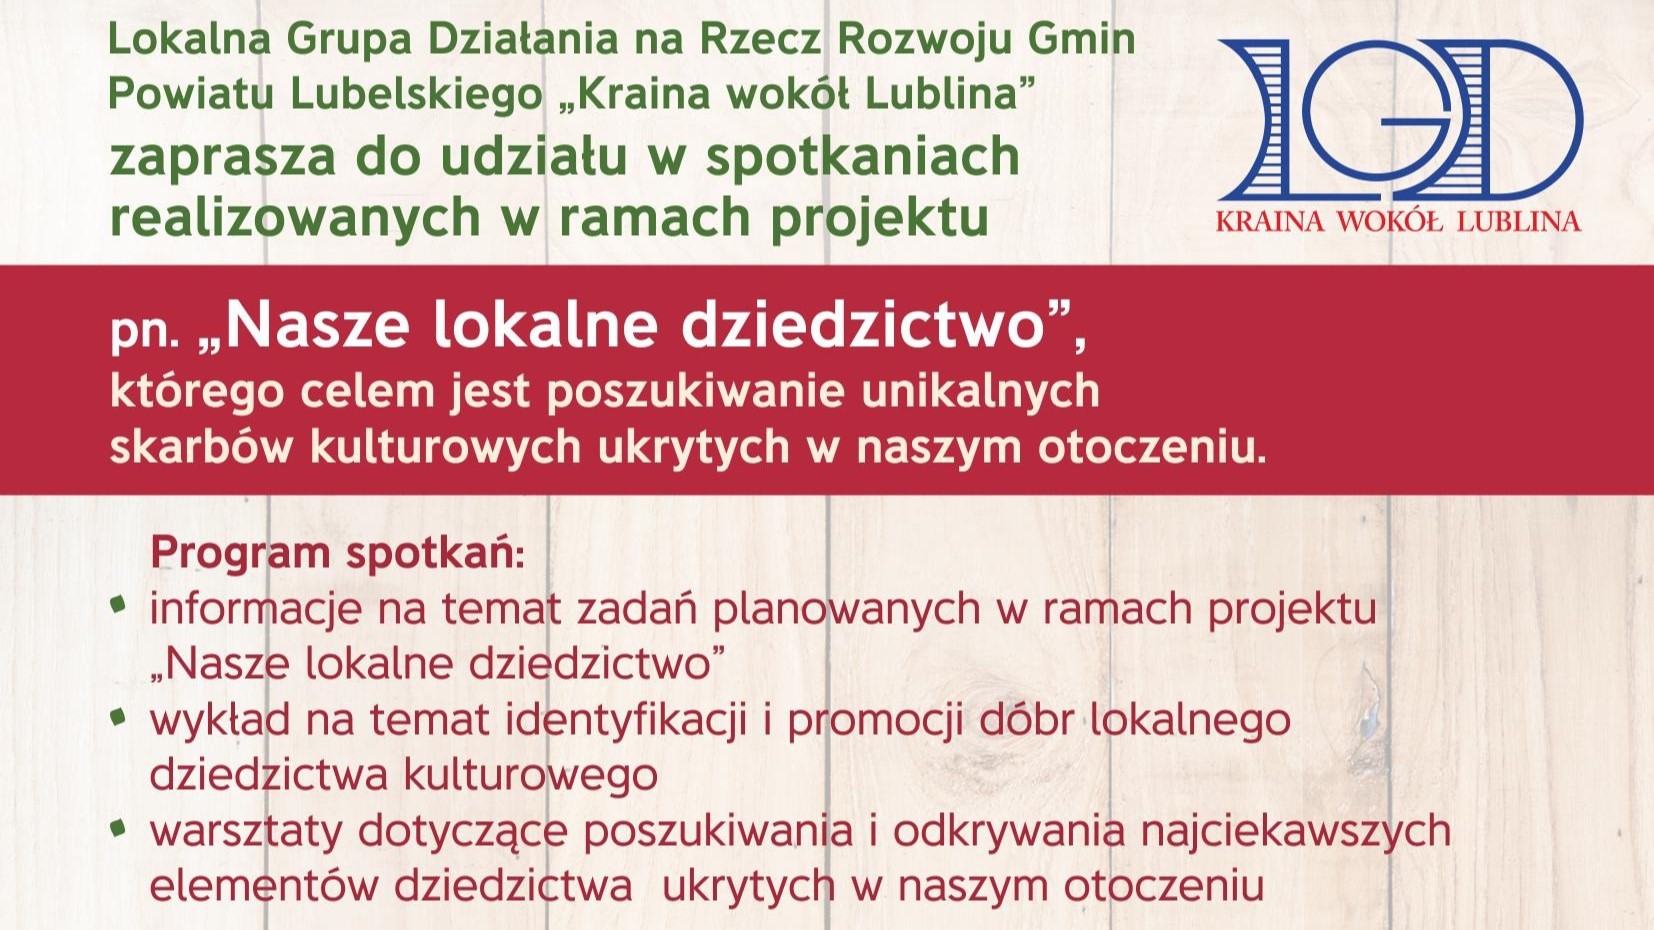 LGD ,,Kraina wokół Lublina” zaprasza do udziału w spotkaniu w ramach projektu ,,Nasze lokalne dziedzictwo”